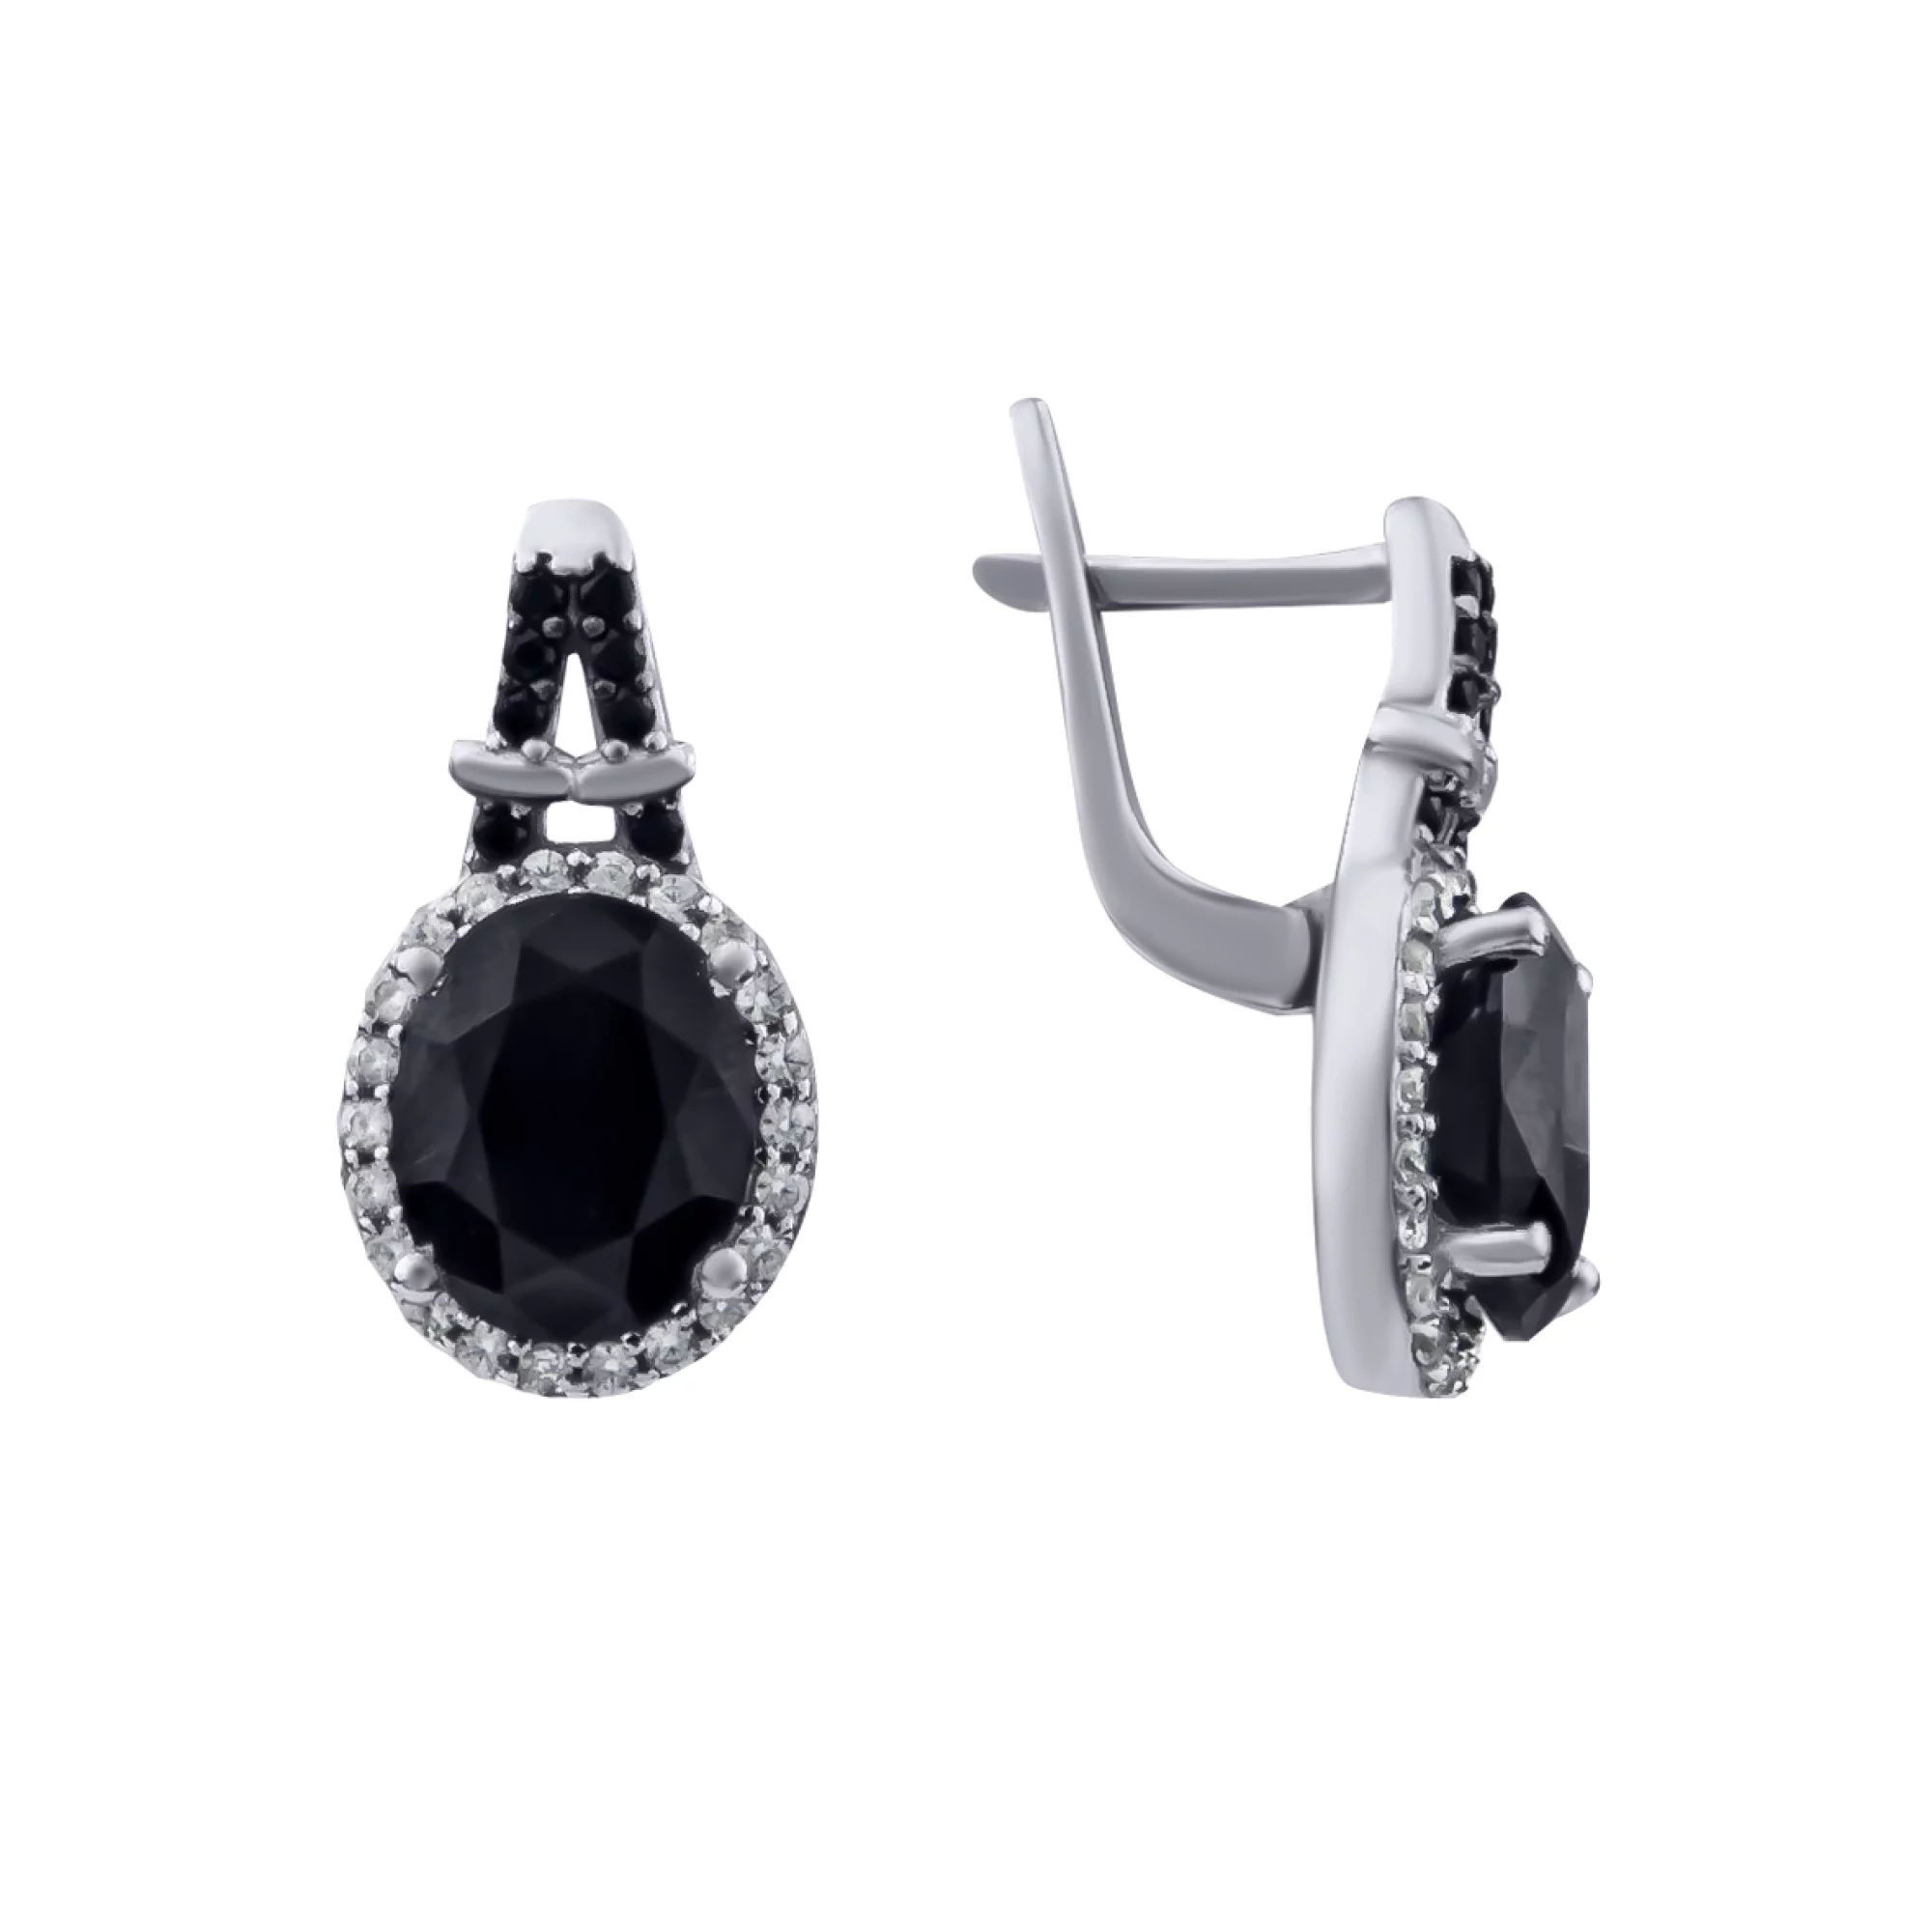 Срібні сережки з гідротермальним сапфіром і чорно-білими фіанітами - 628726 – зображення 1